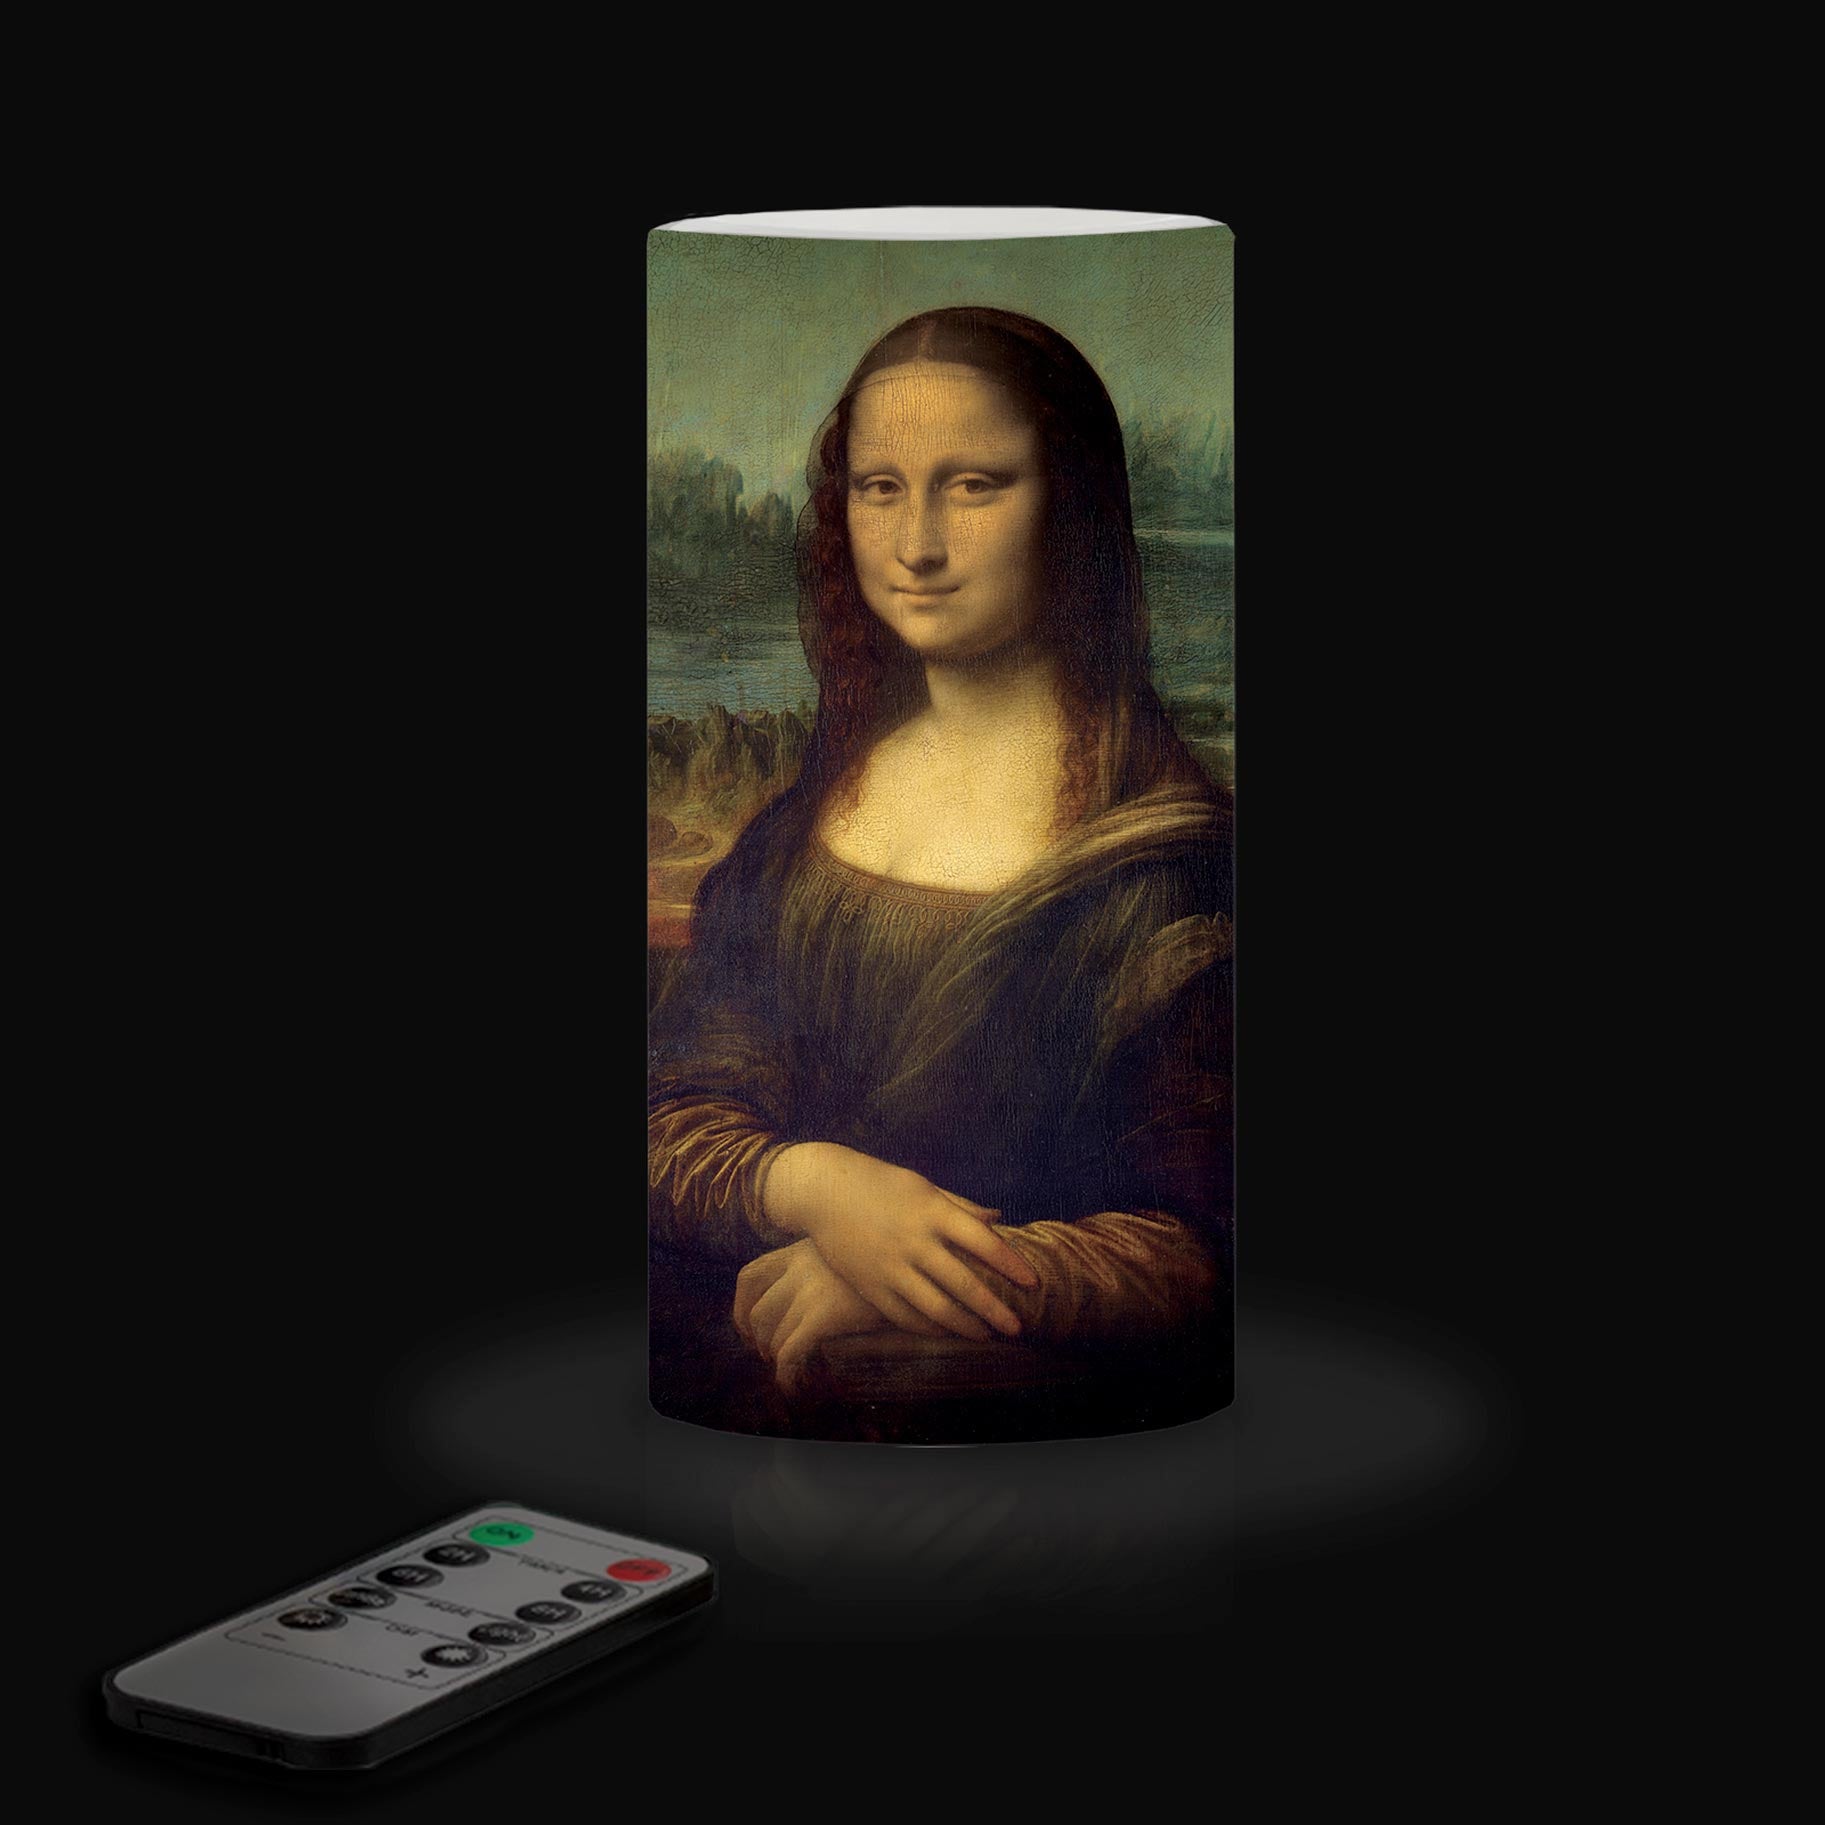 Flameless LED Flickering 6" Pillar Wax Candle Light - Artist da Vinci - Mona Lisa